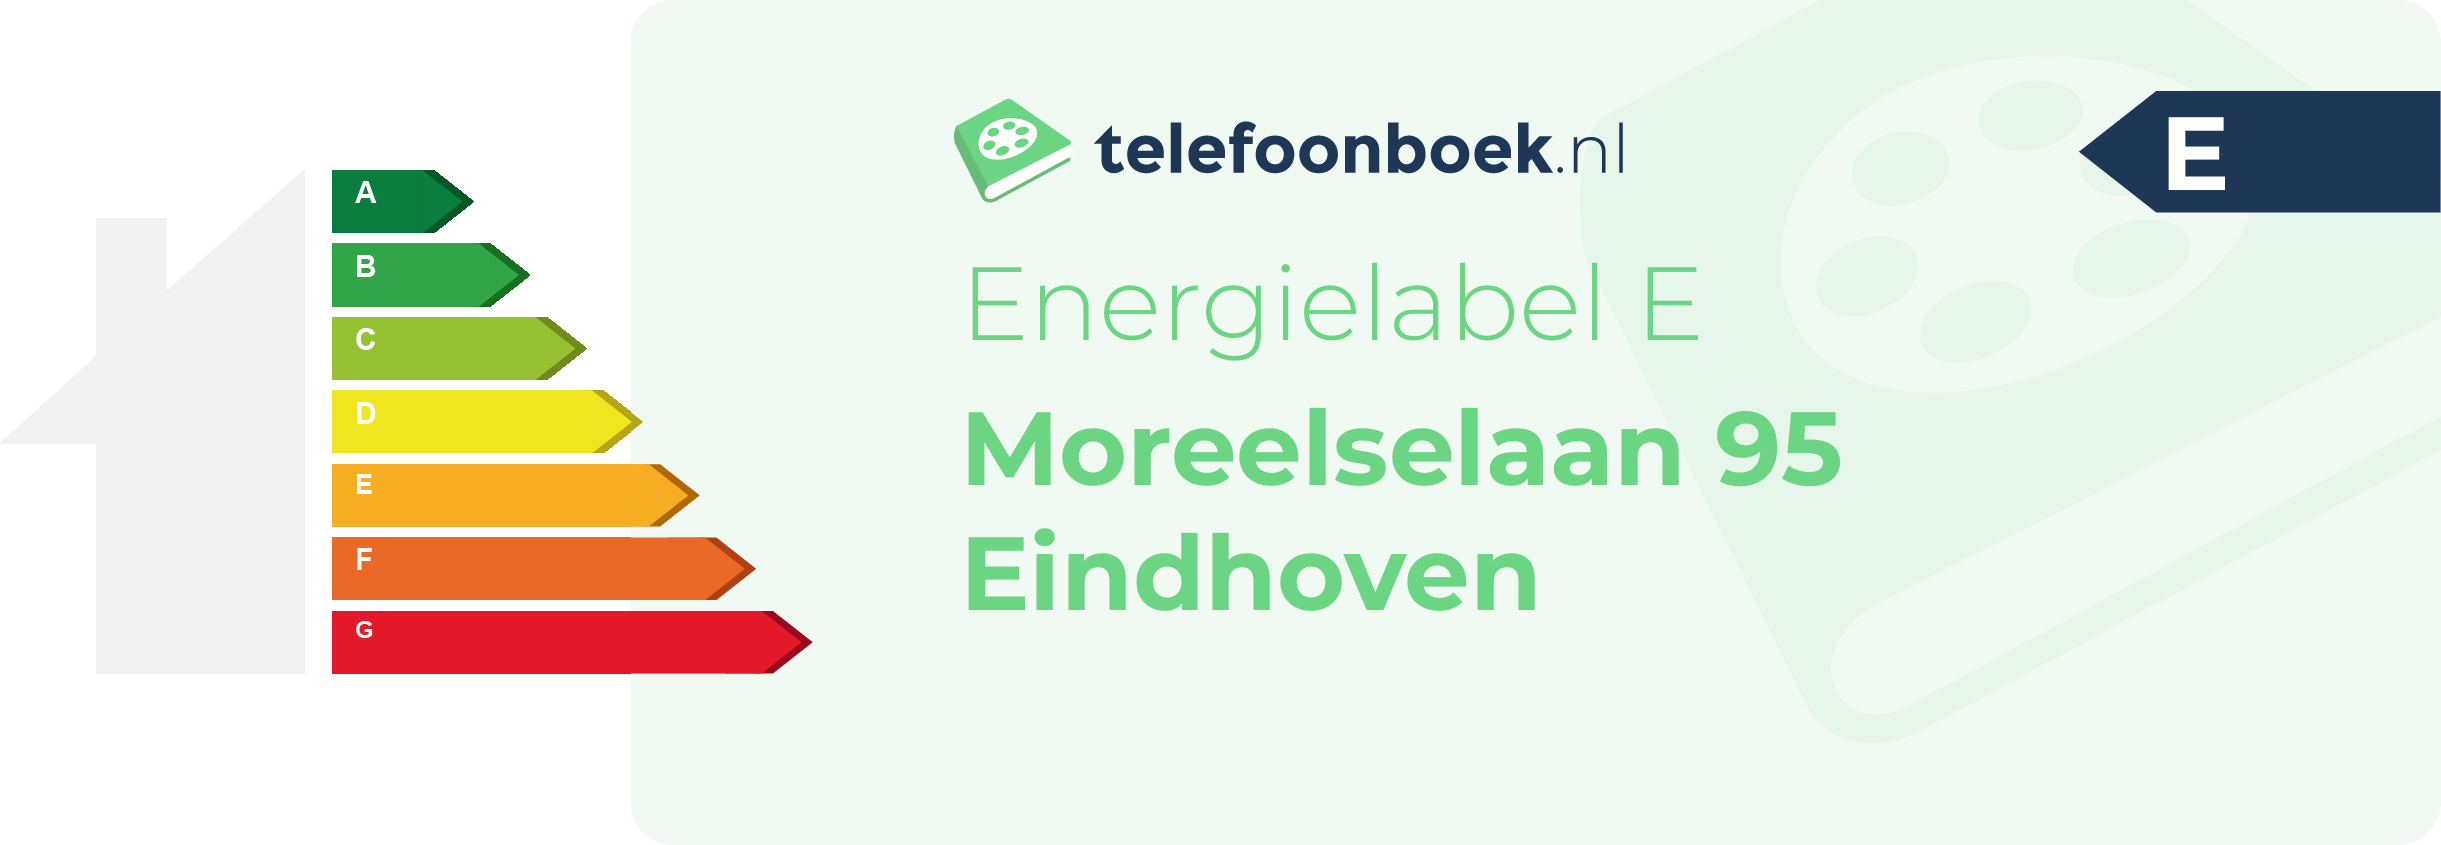 Energielabel Moreelselaan 95 Eindhoven